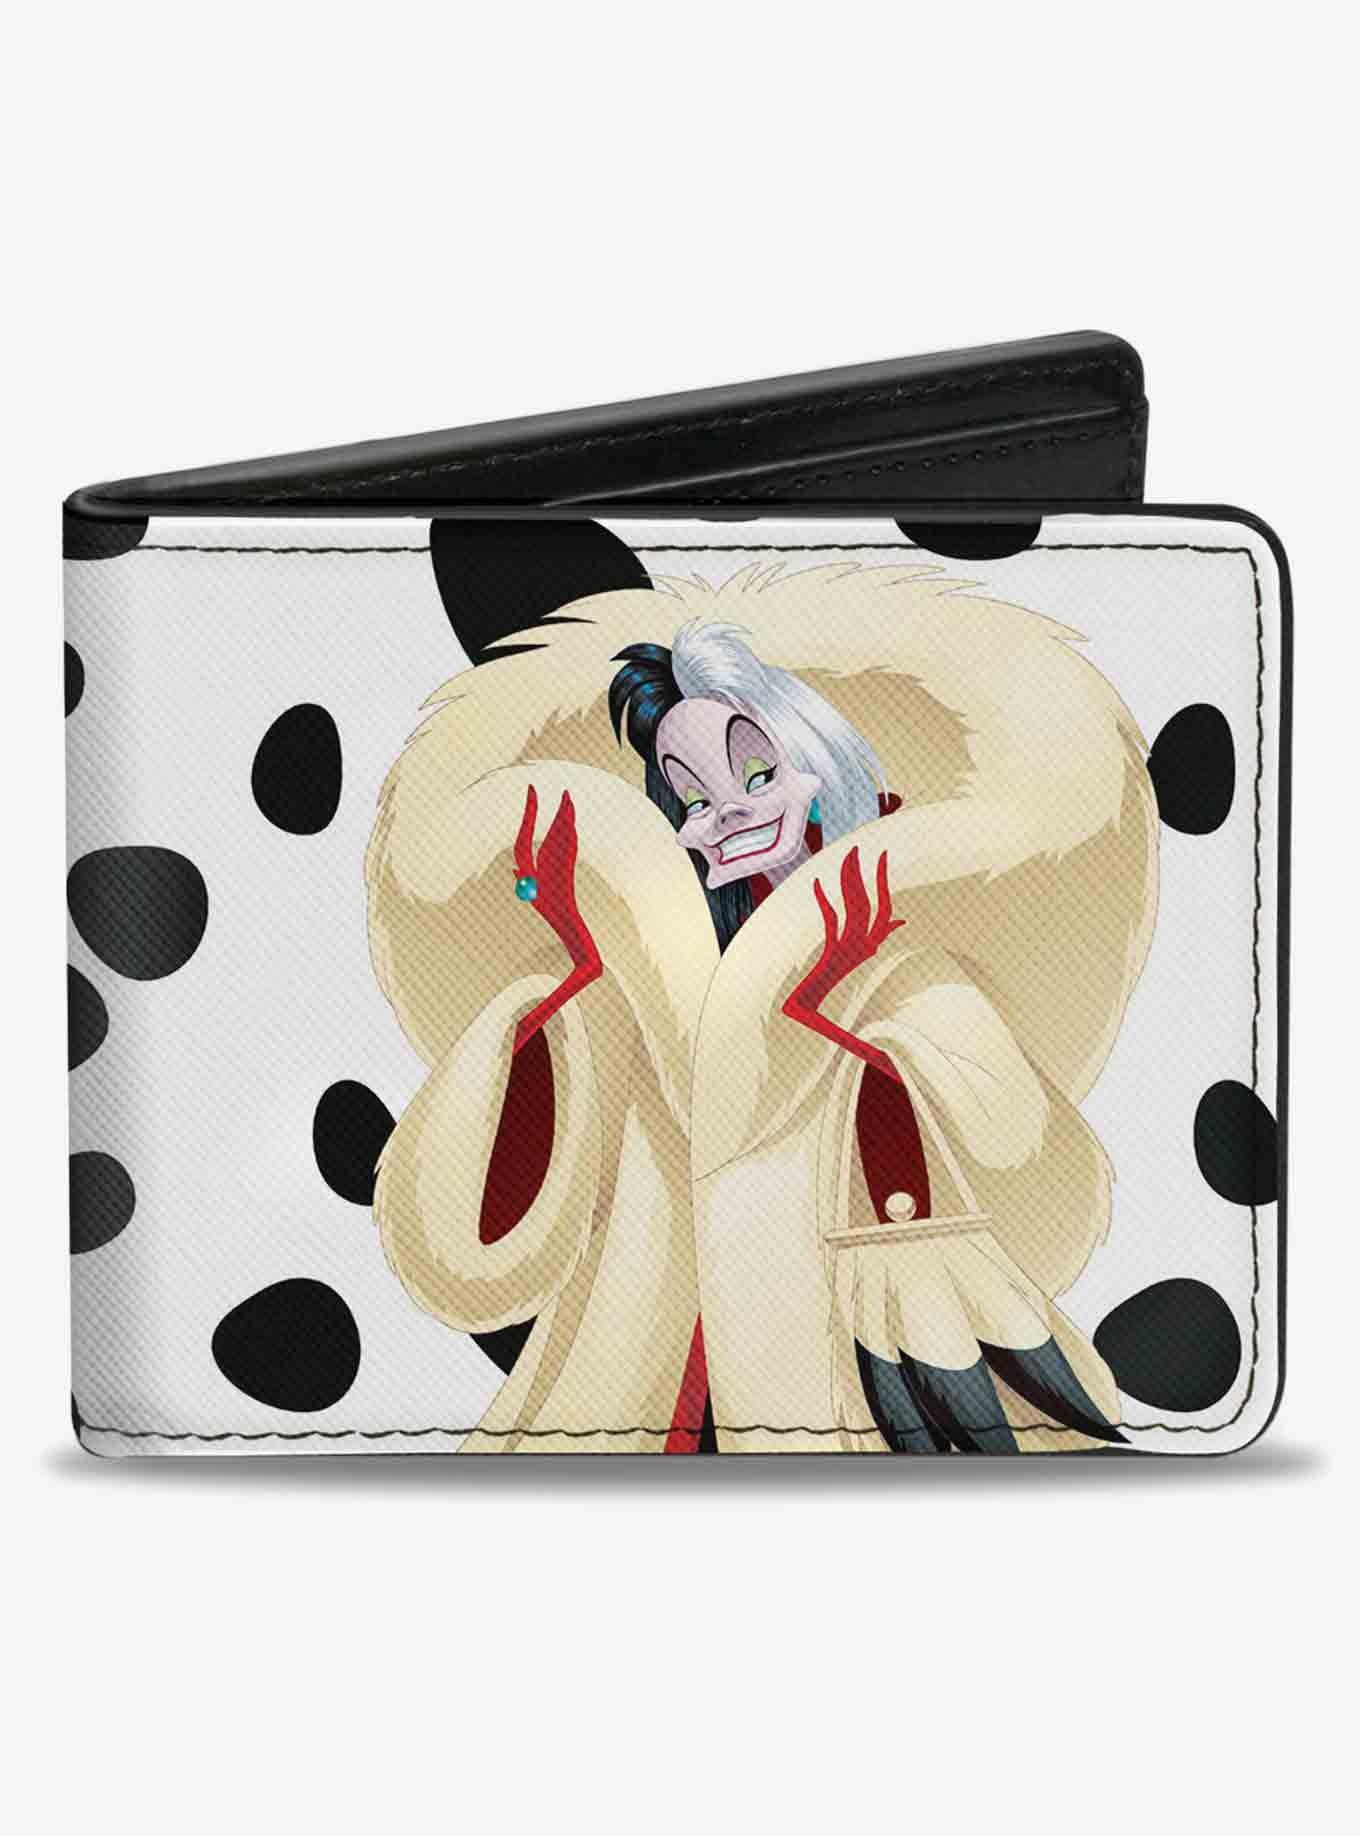 Spots De Vil  Cruella De Vil Inspired Handbags